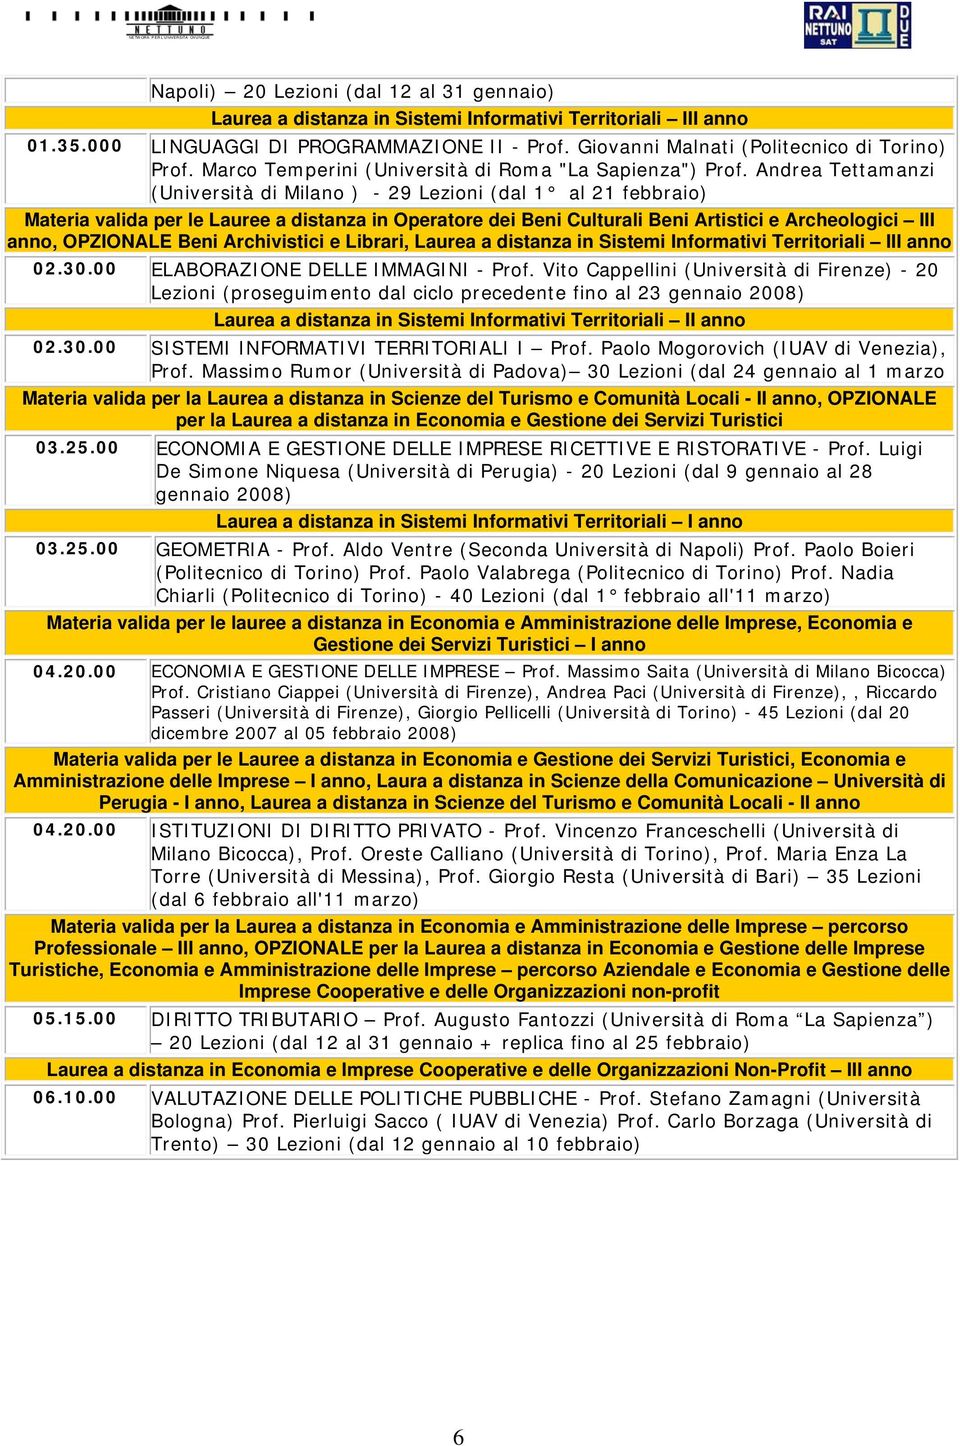 Andrea Tettamanzi (Università di Milano ) - 29 Lezioni (dal 1 al 21 febbraio) Materia valida per le Lauree a distanza in Operatore dei Beni Culturali Beni Artistici e Archeologici III anno, OPZIONALE